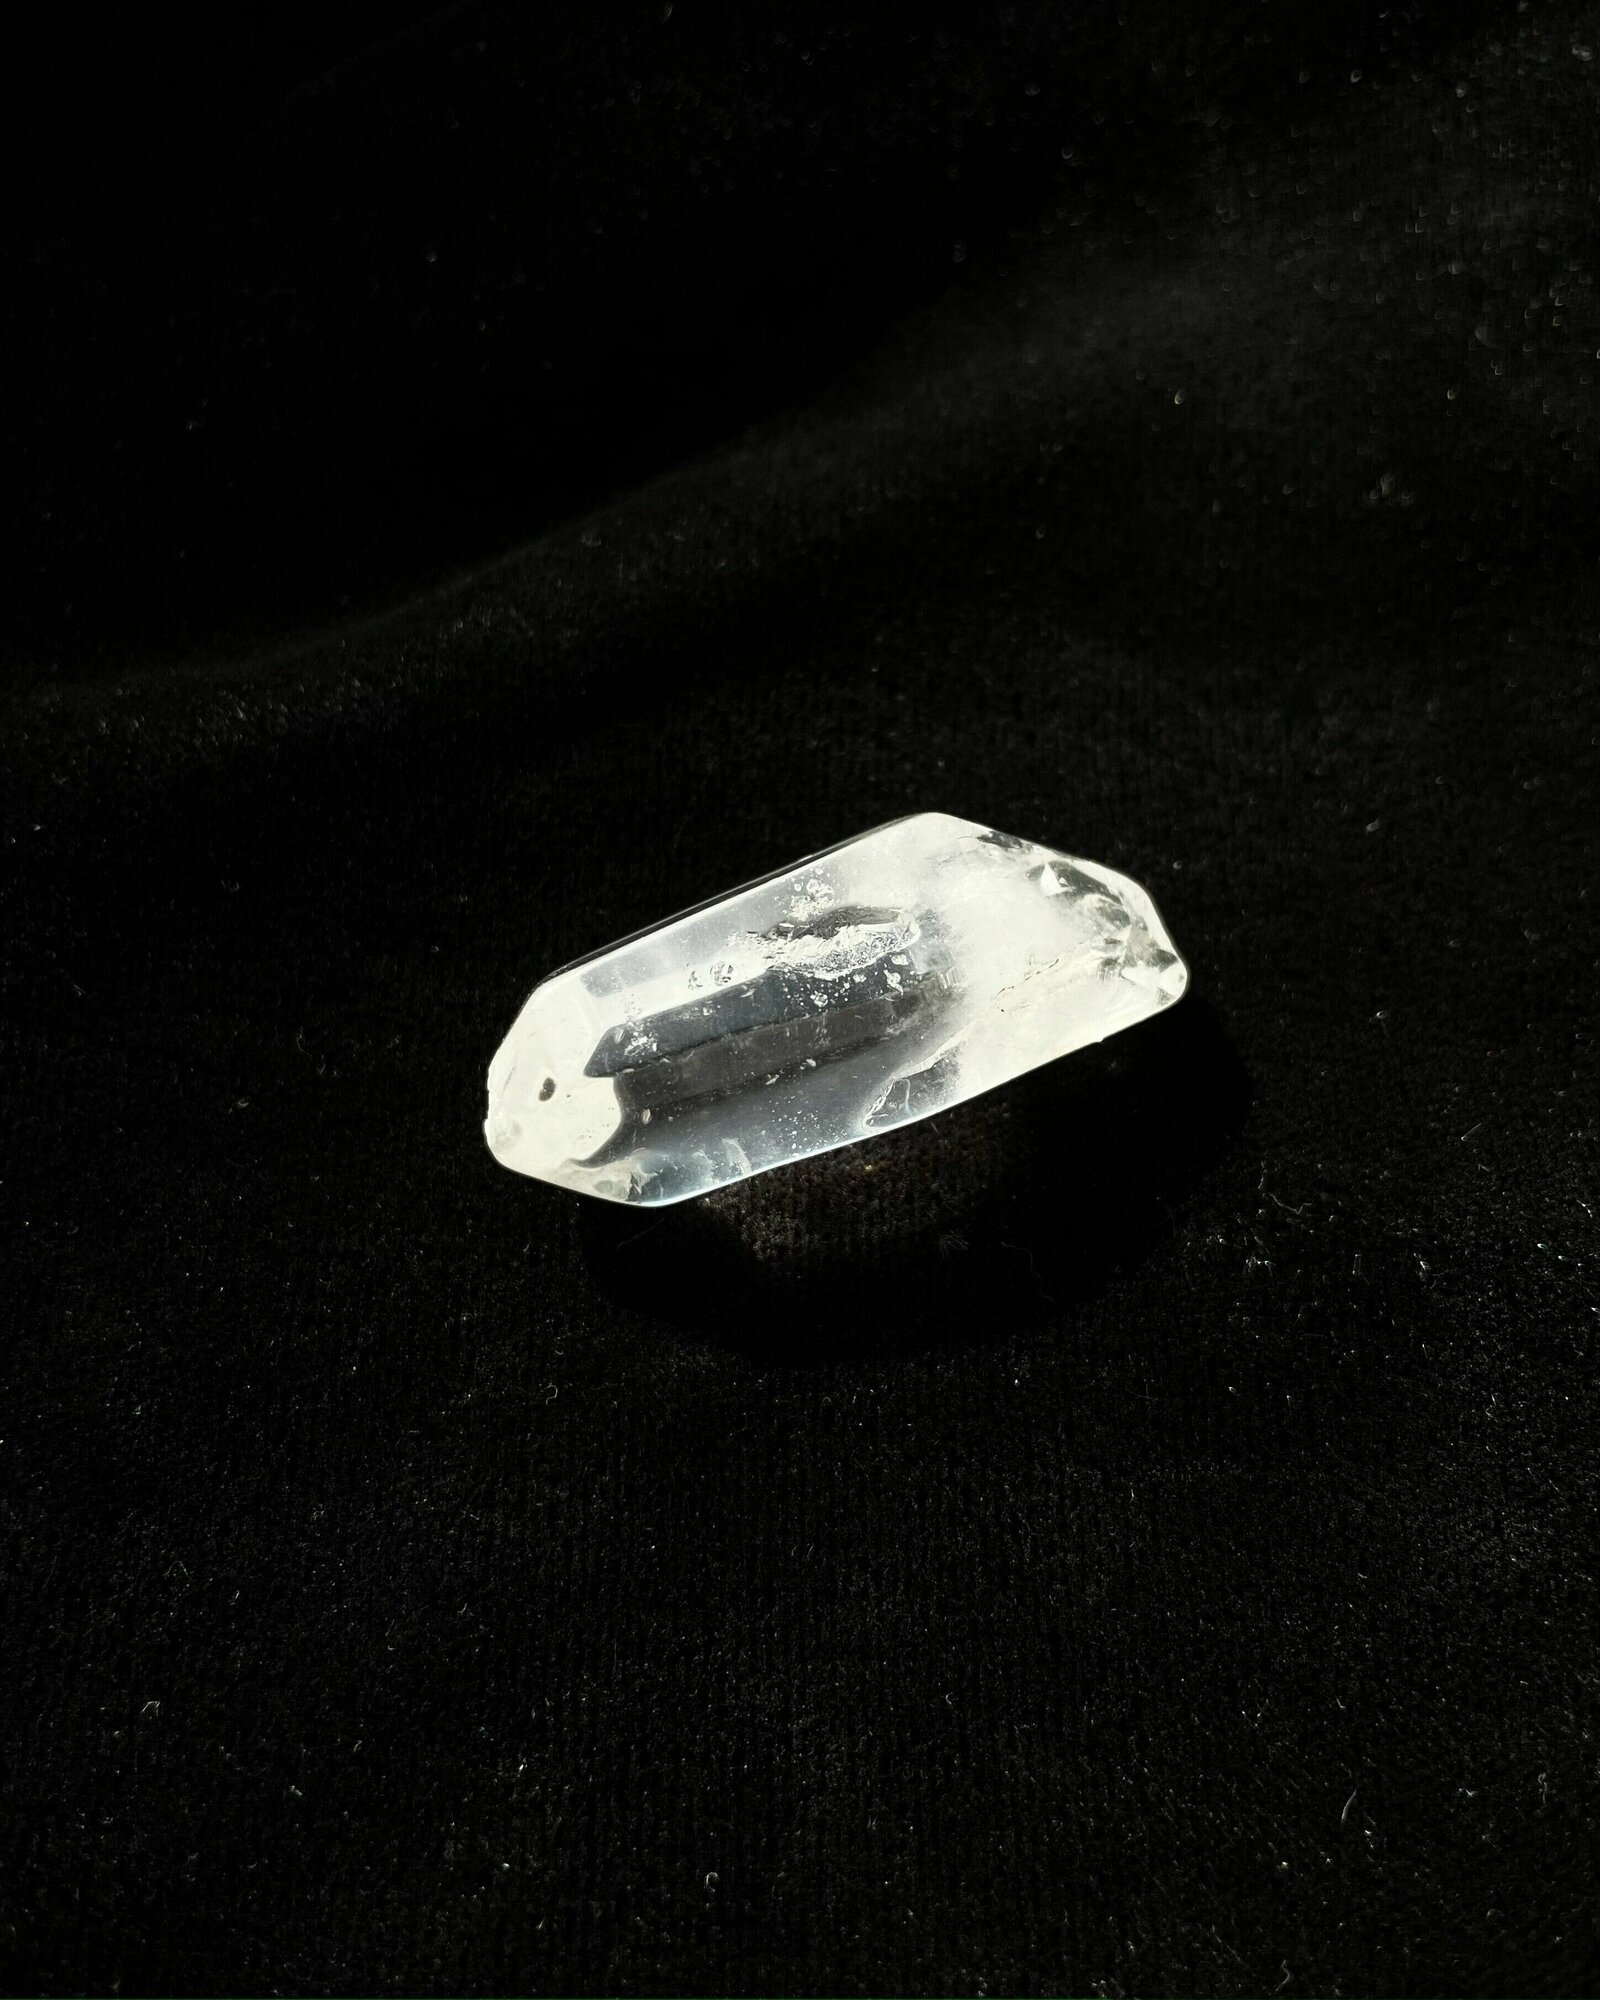 Оберег, амулет из натурального камня самоцвет Горный хрусталь, кристалл друзы, помогает очищать ауру, развивать интуицию и предвидение, 3-4 см, 1 шт